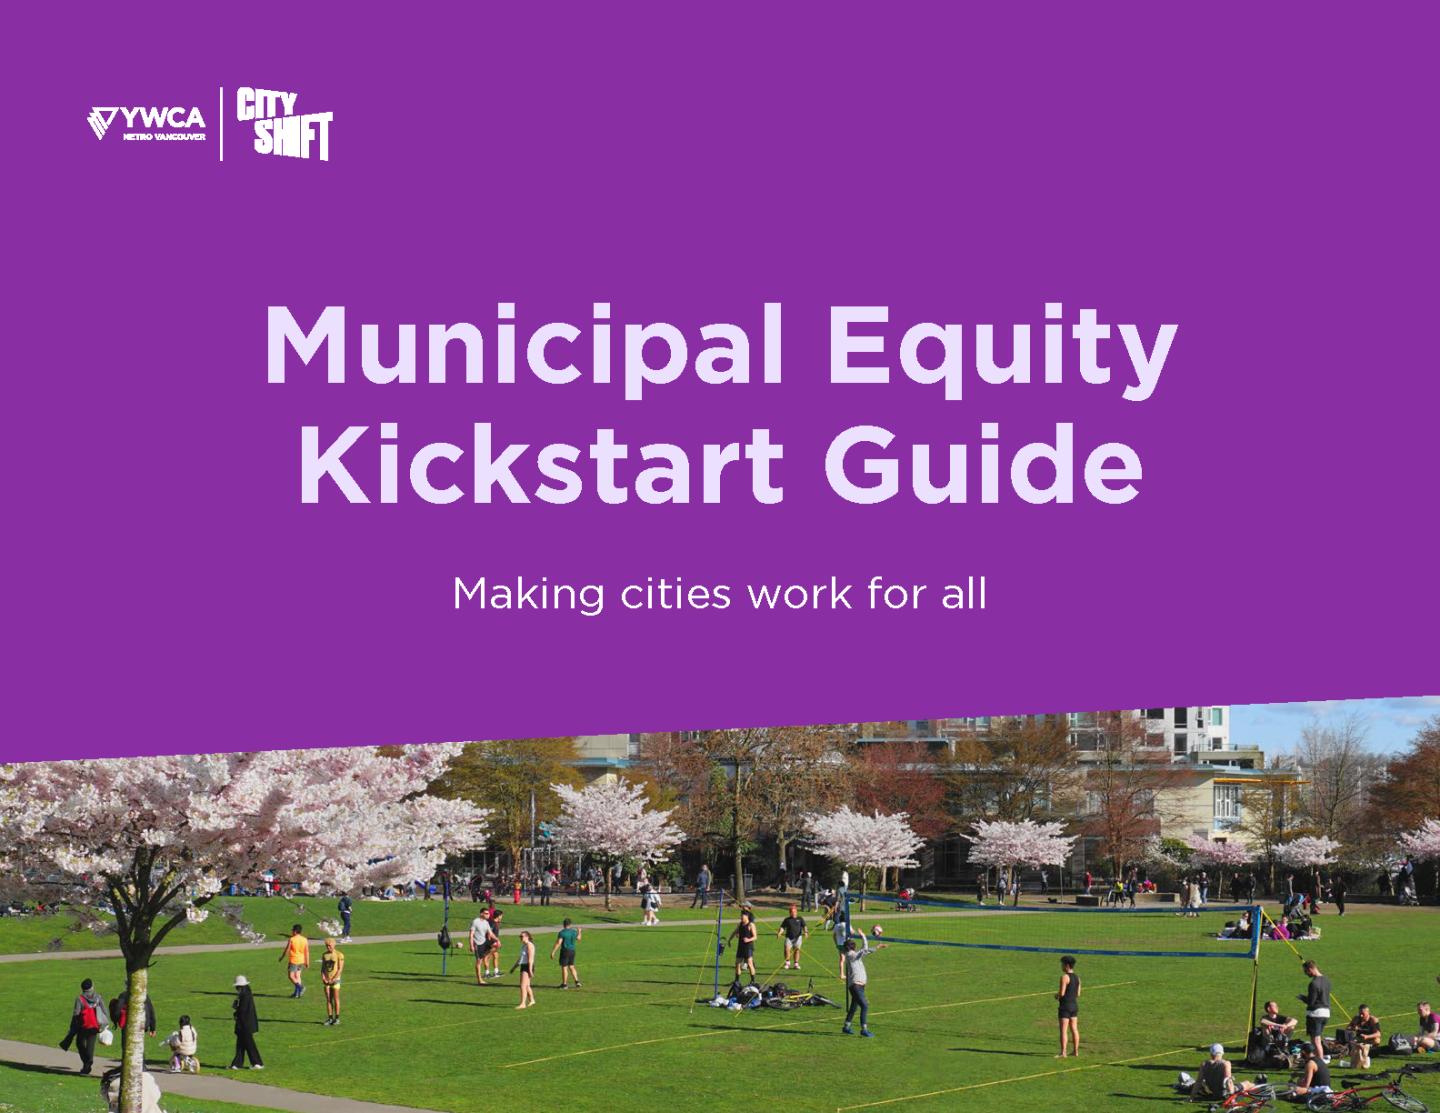 YWCA City Shift Municipal Equity Kickstart Guide